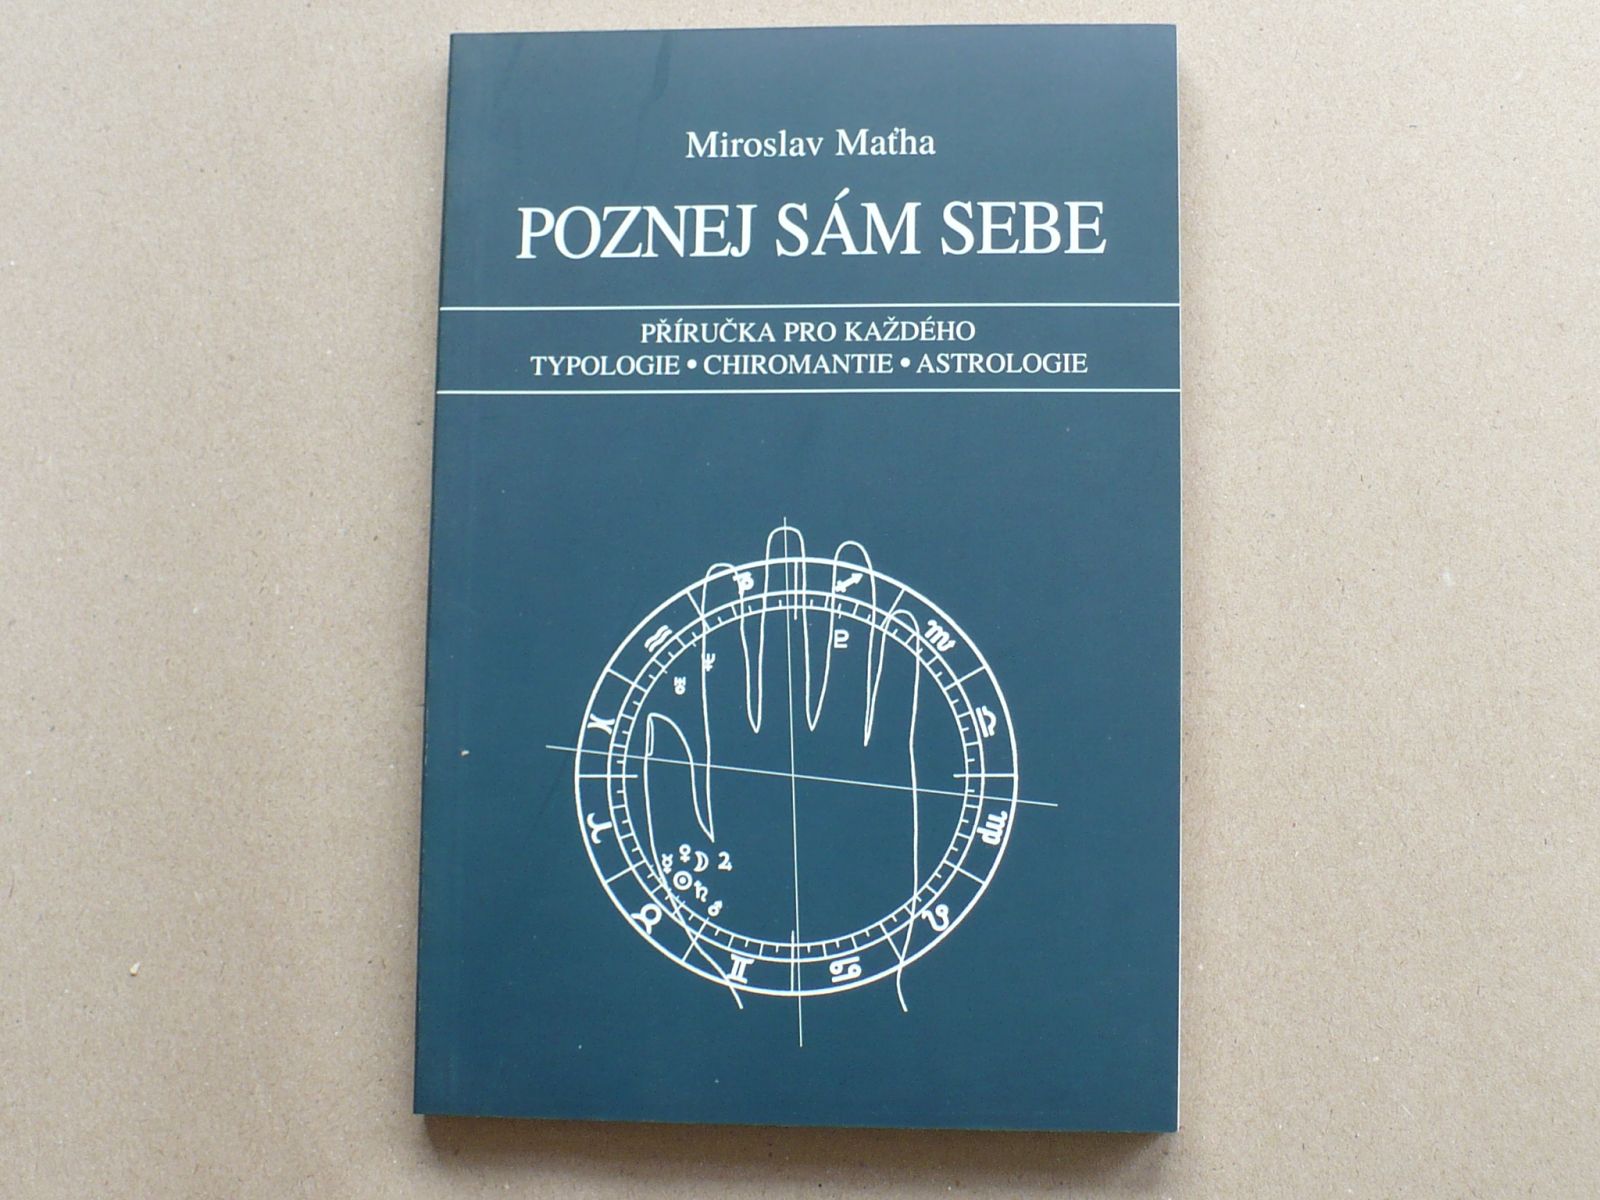 Miroslav Maťha - Poznej sám sebe (2000)